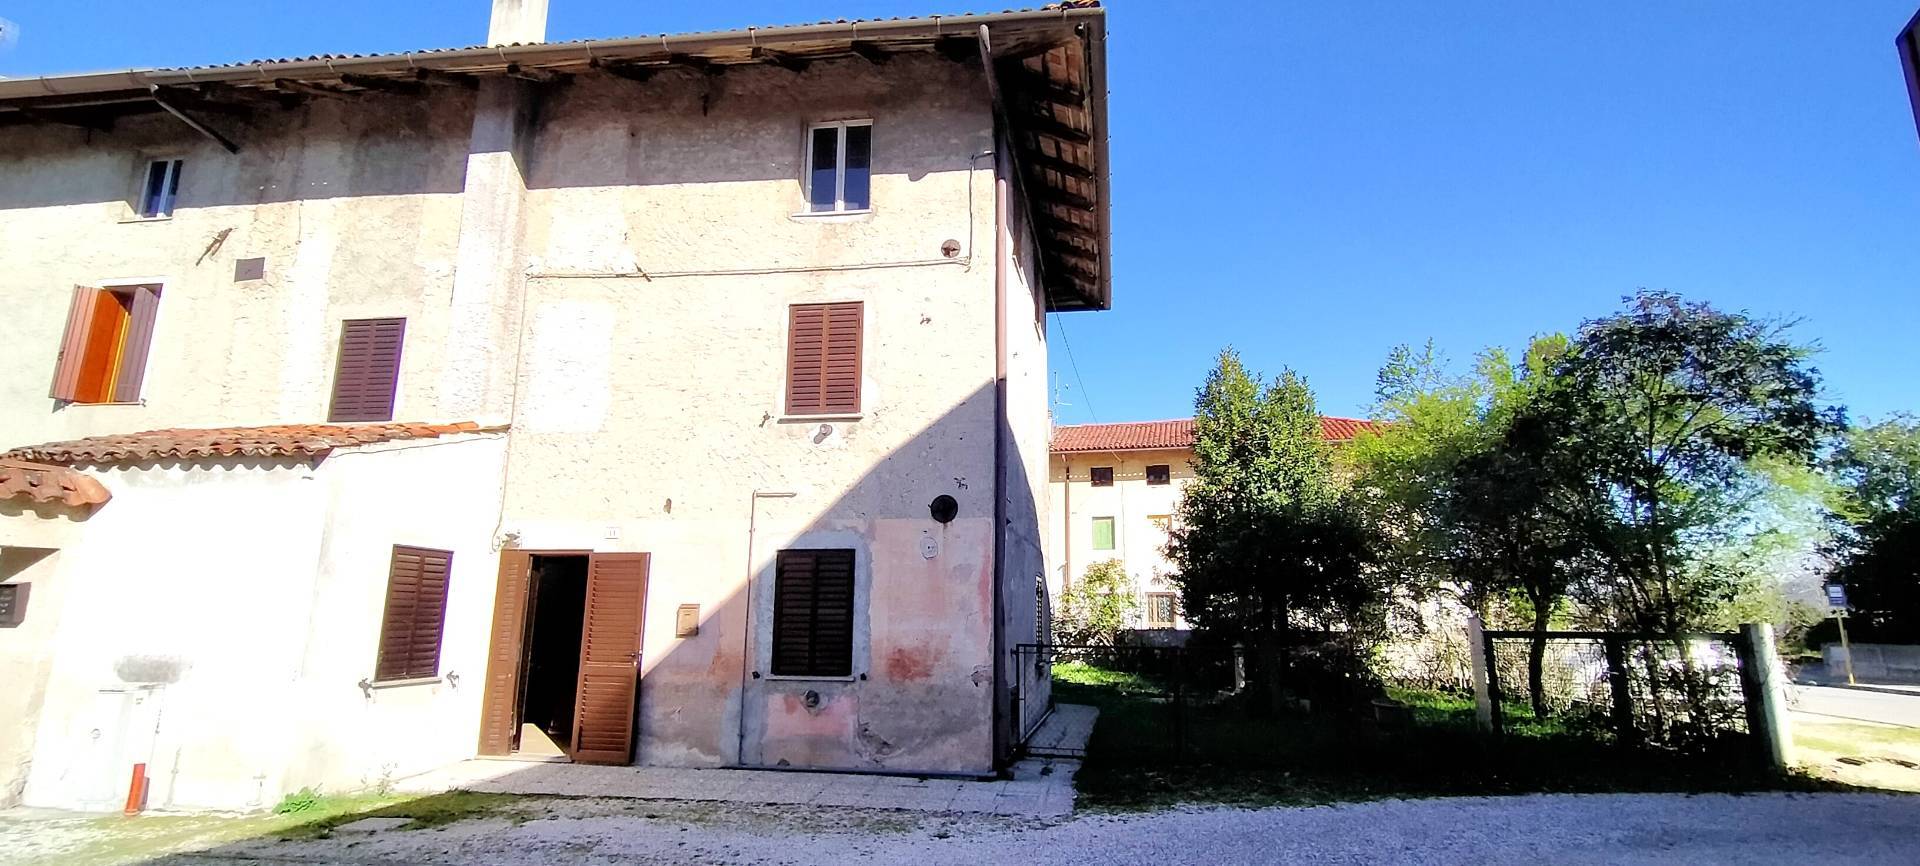 Casa semi-indipendente in vendita a Terenzano, Pozzuolo Del Friuli (UD)